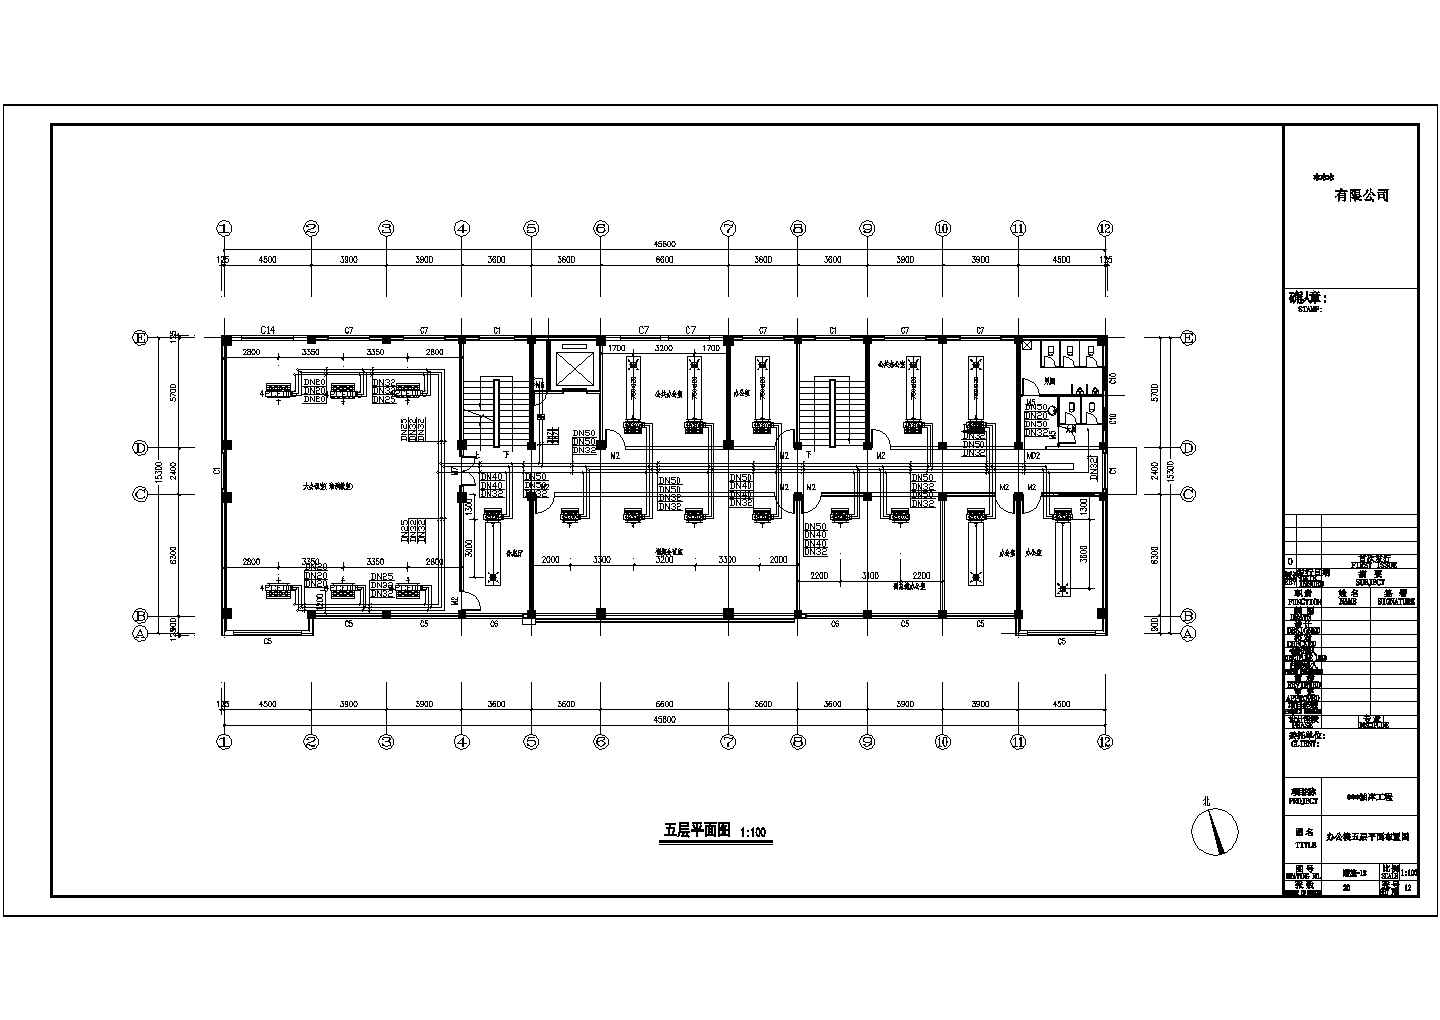 五层宿舍五层办公两层食堂螺杆水源热泵机组中央空调设计施工图